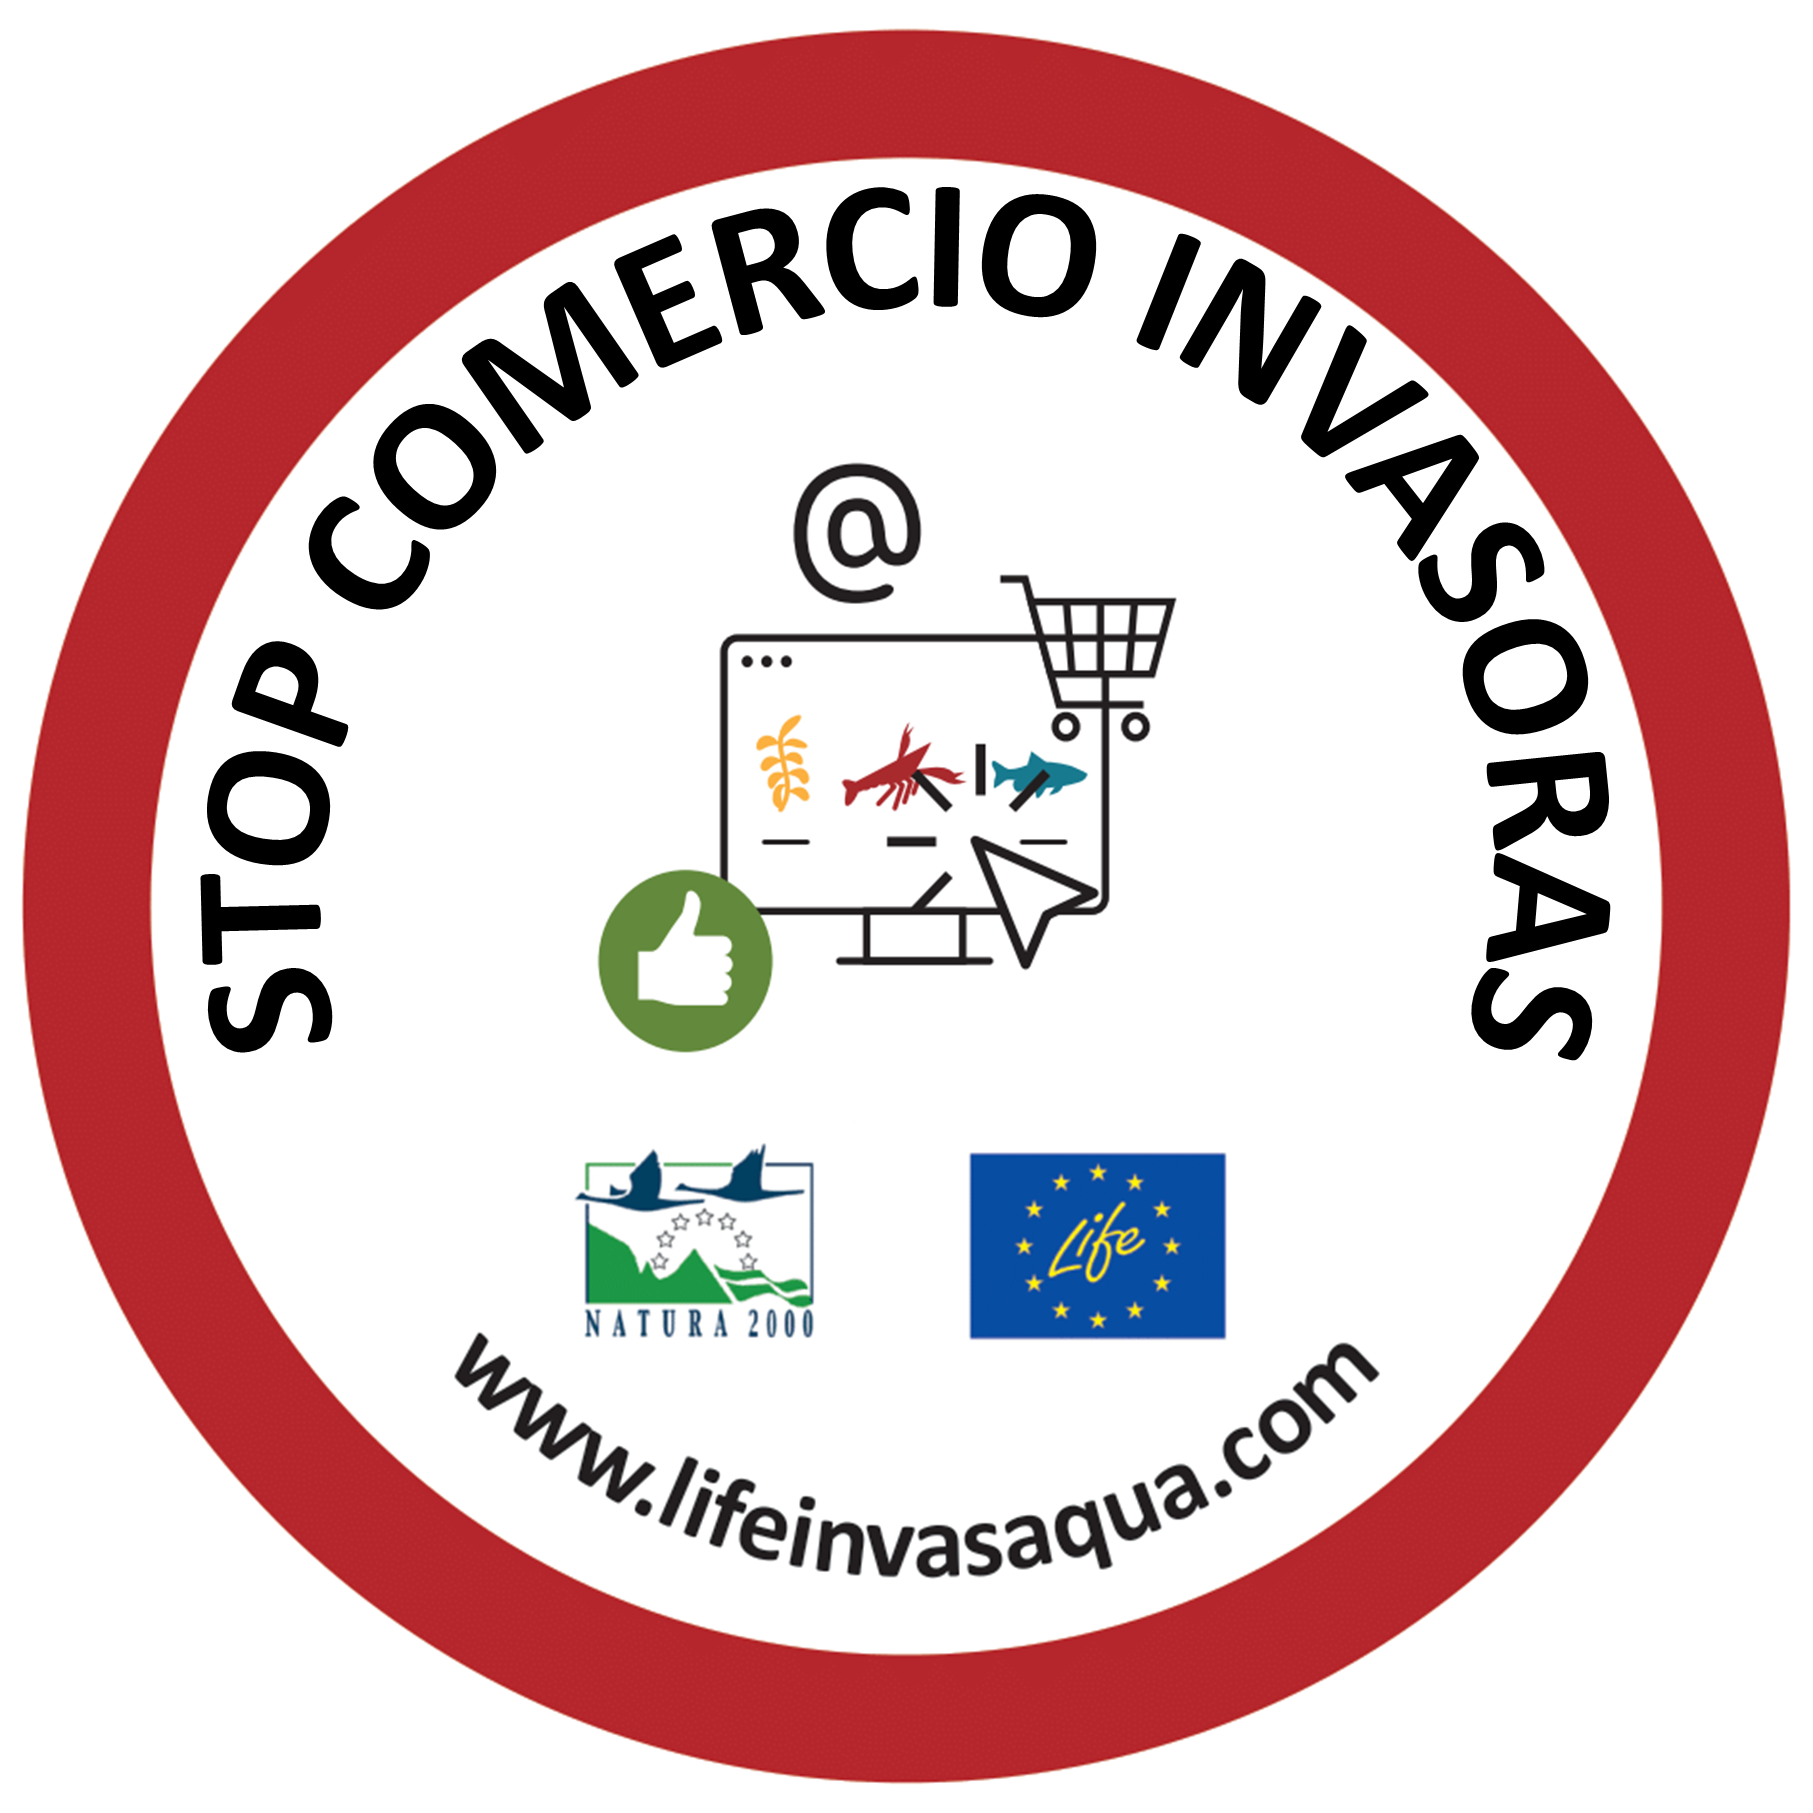 LIFE INVASAQUA lança a campanha “Stop Comércio Invasoras” apoiada por entidades portuguesas e espanholas